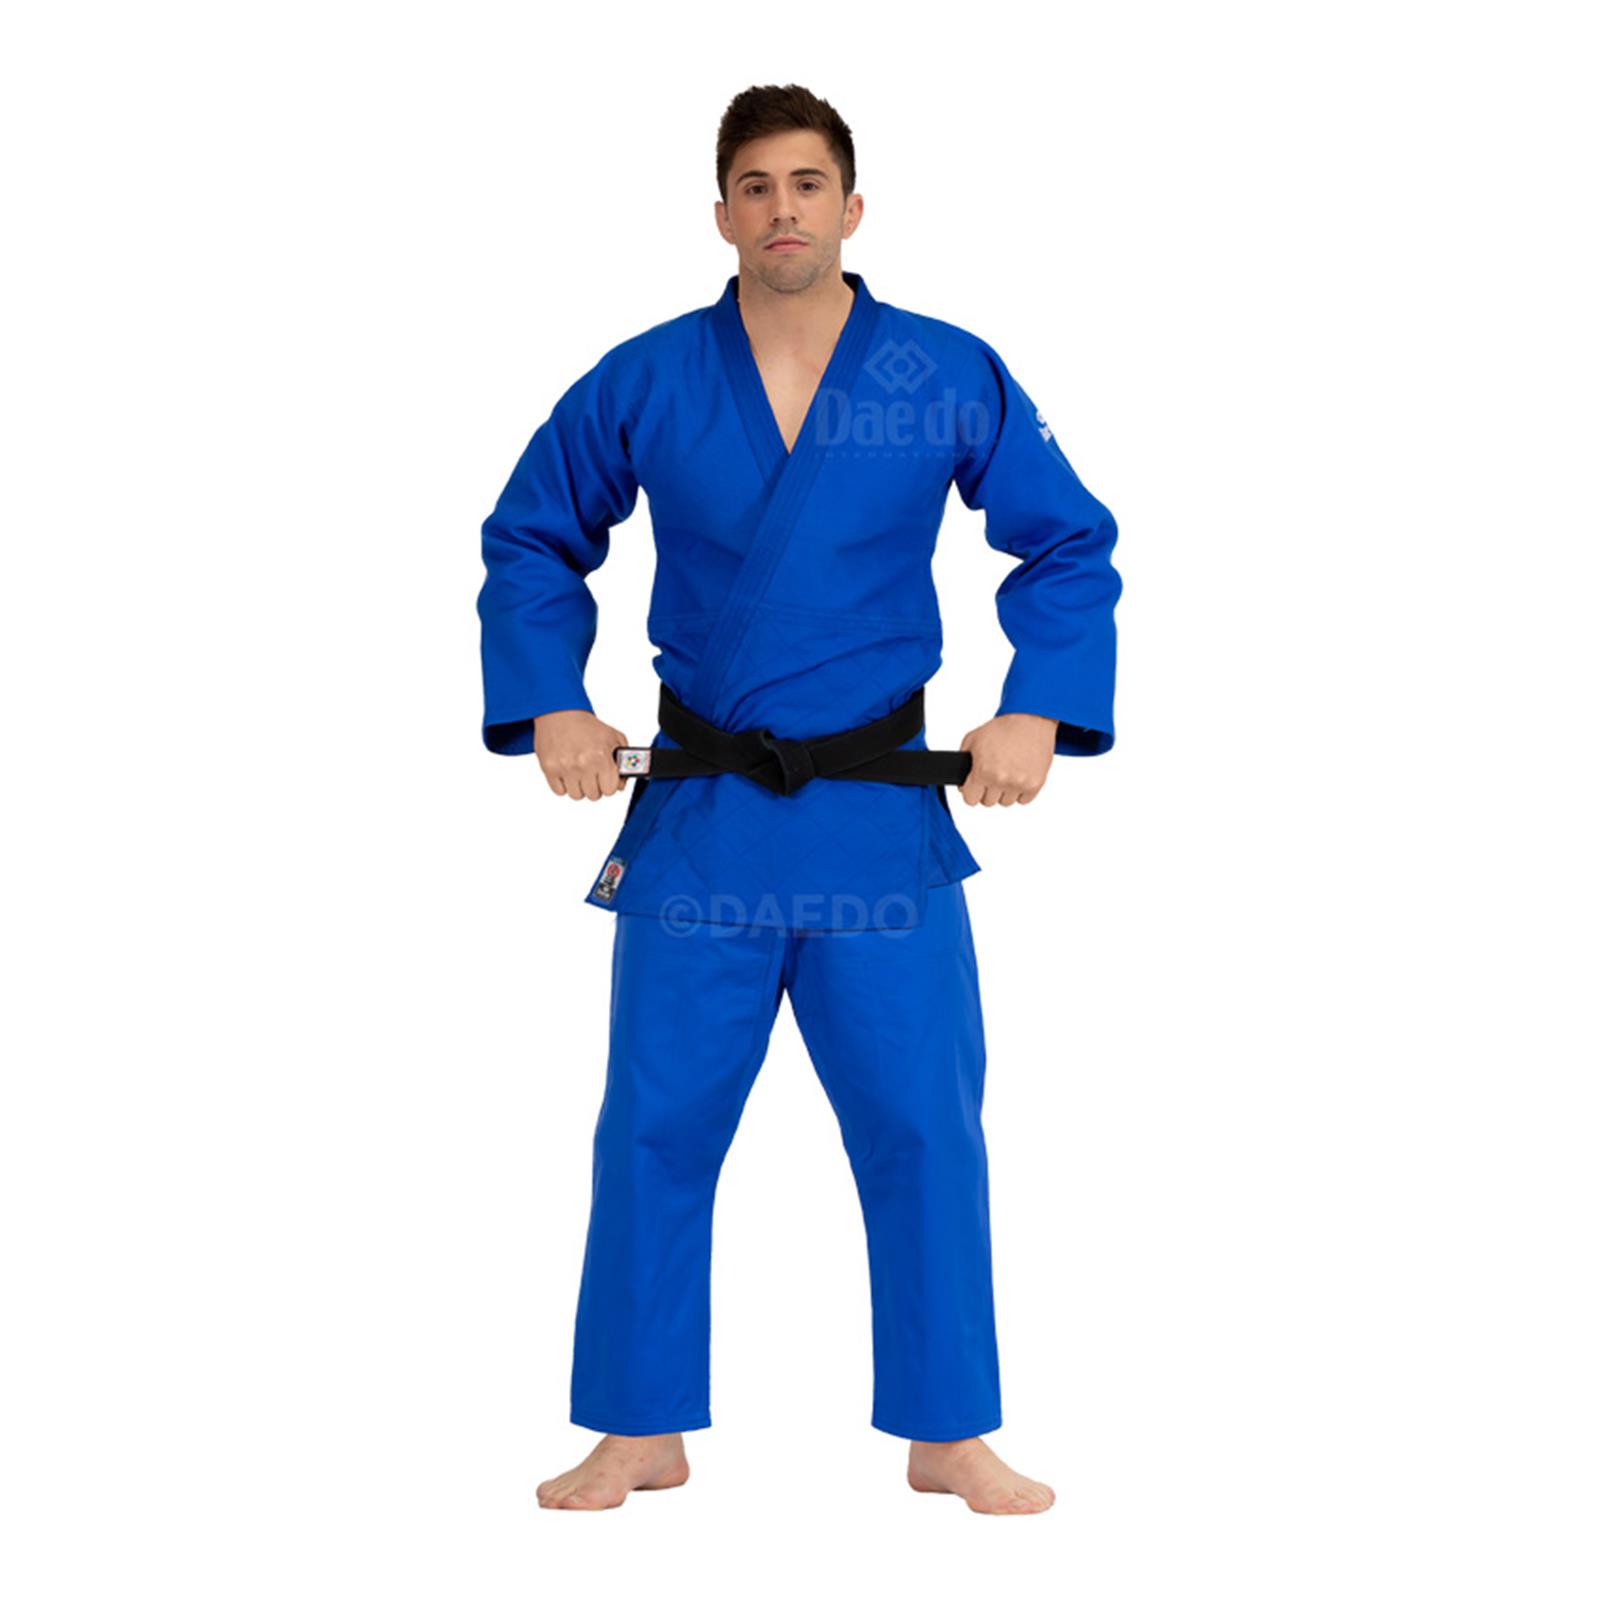 Dae Do Judogi da Competizione Elite az (4.5° - 175cm - BLU)